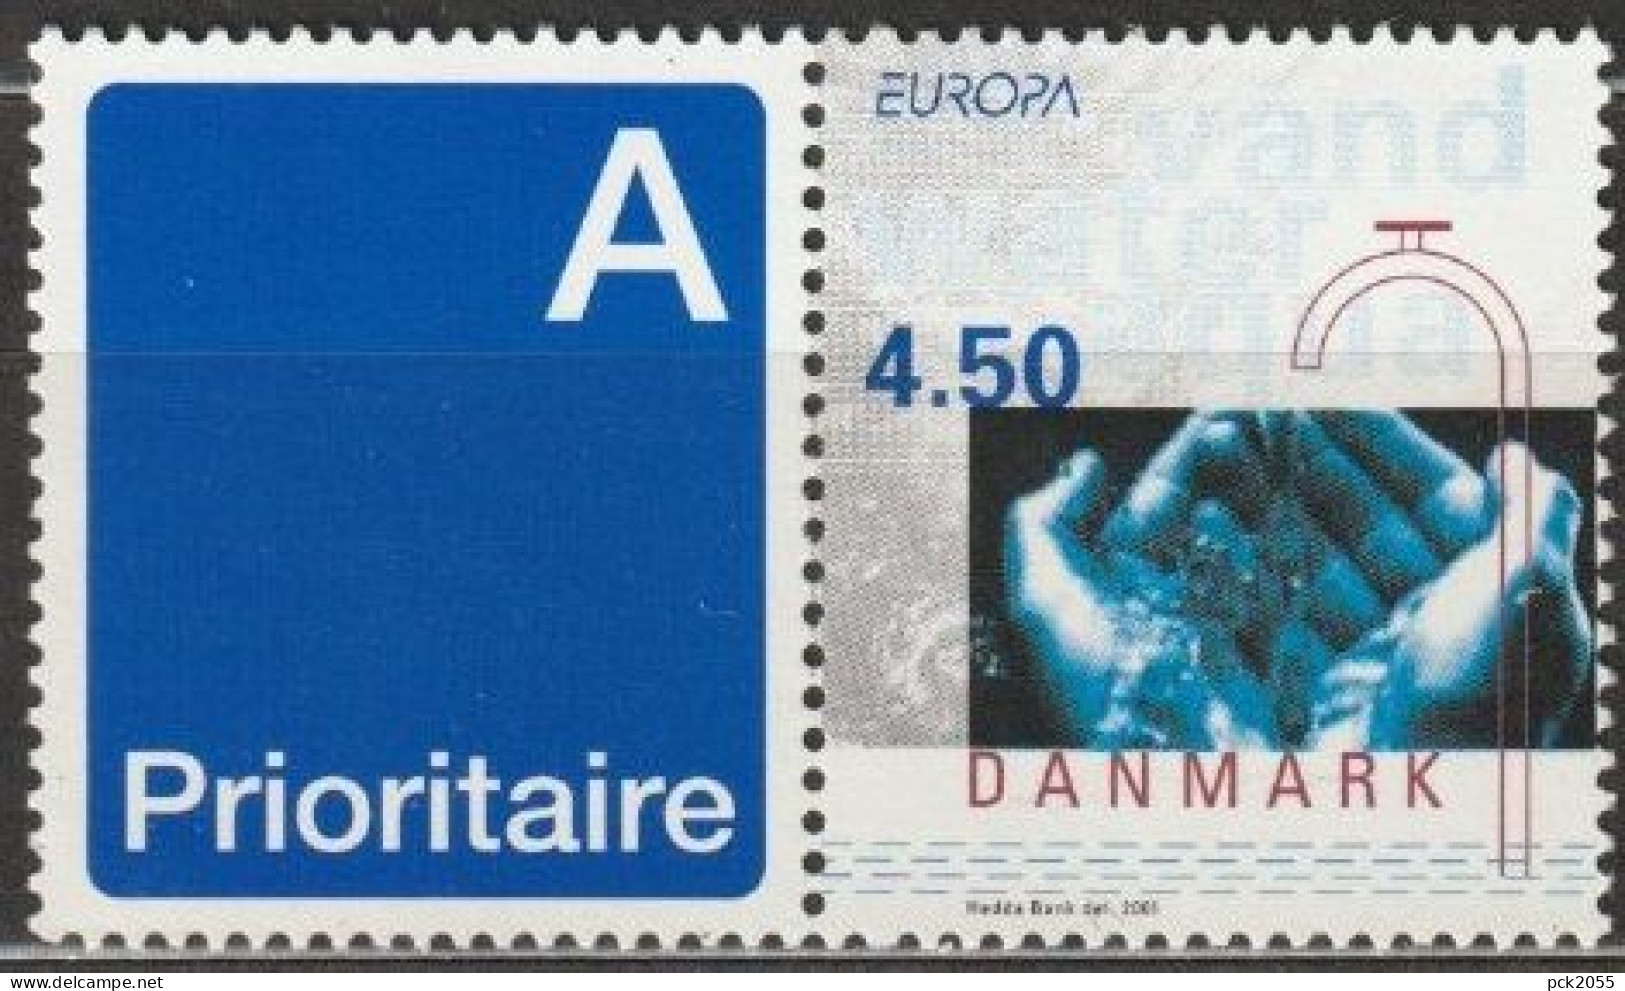 Dänemark 2001 Mi-Nr.1277 ZF ** Postfrisch Europa Lebemsspender Wasser ( B 2843) - Unused Stamps